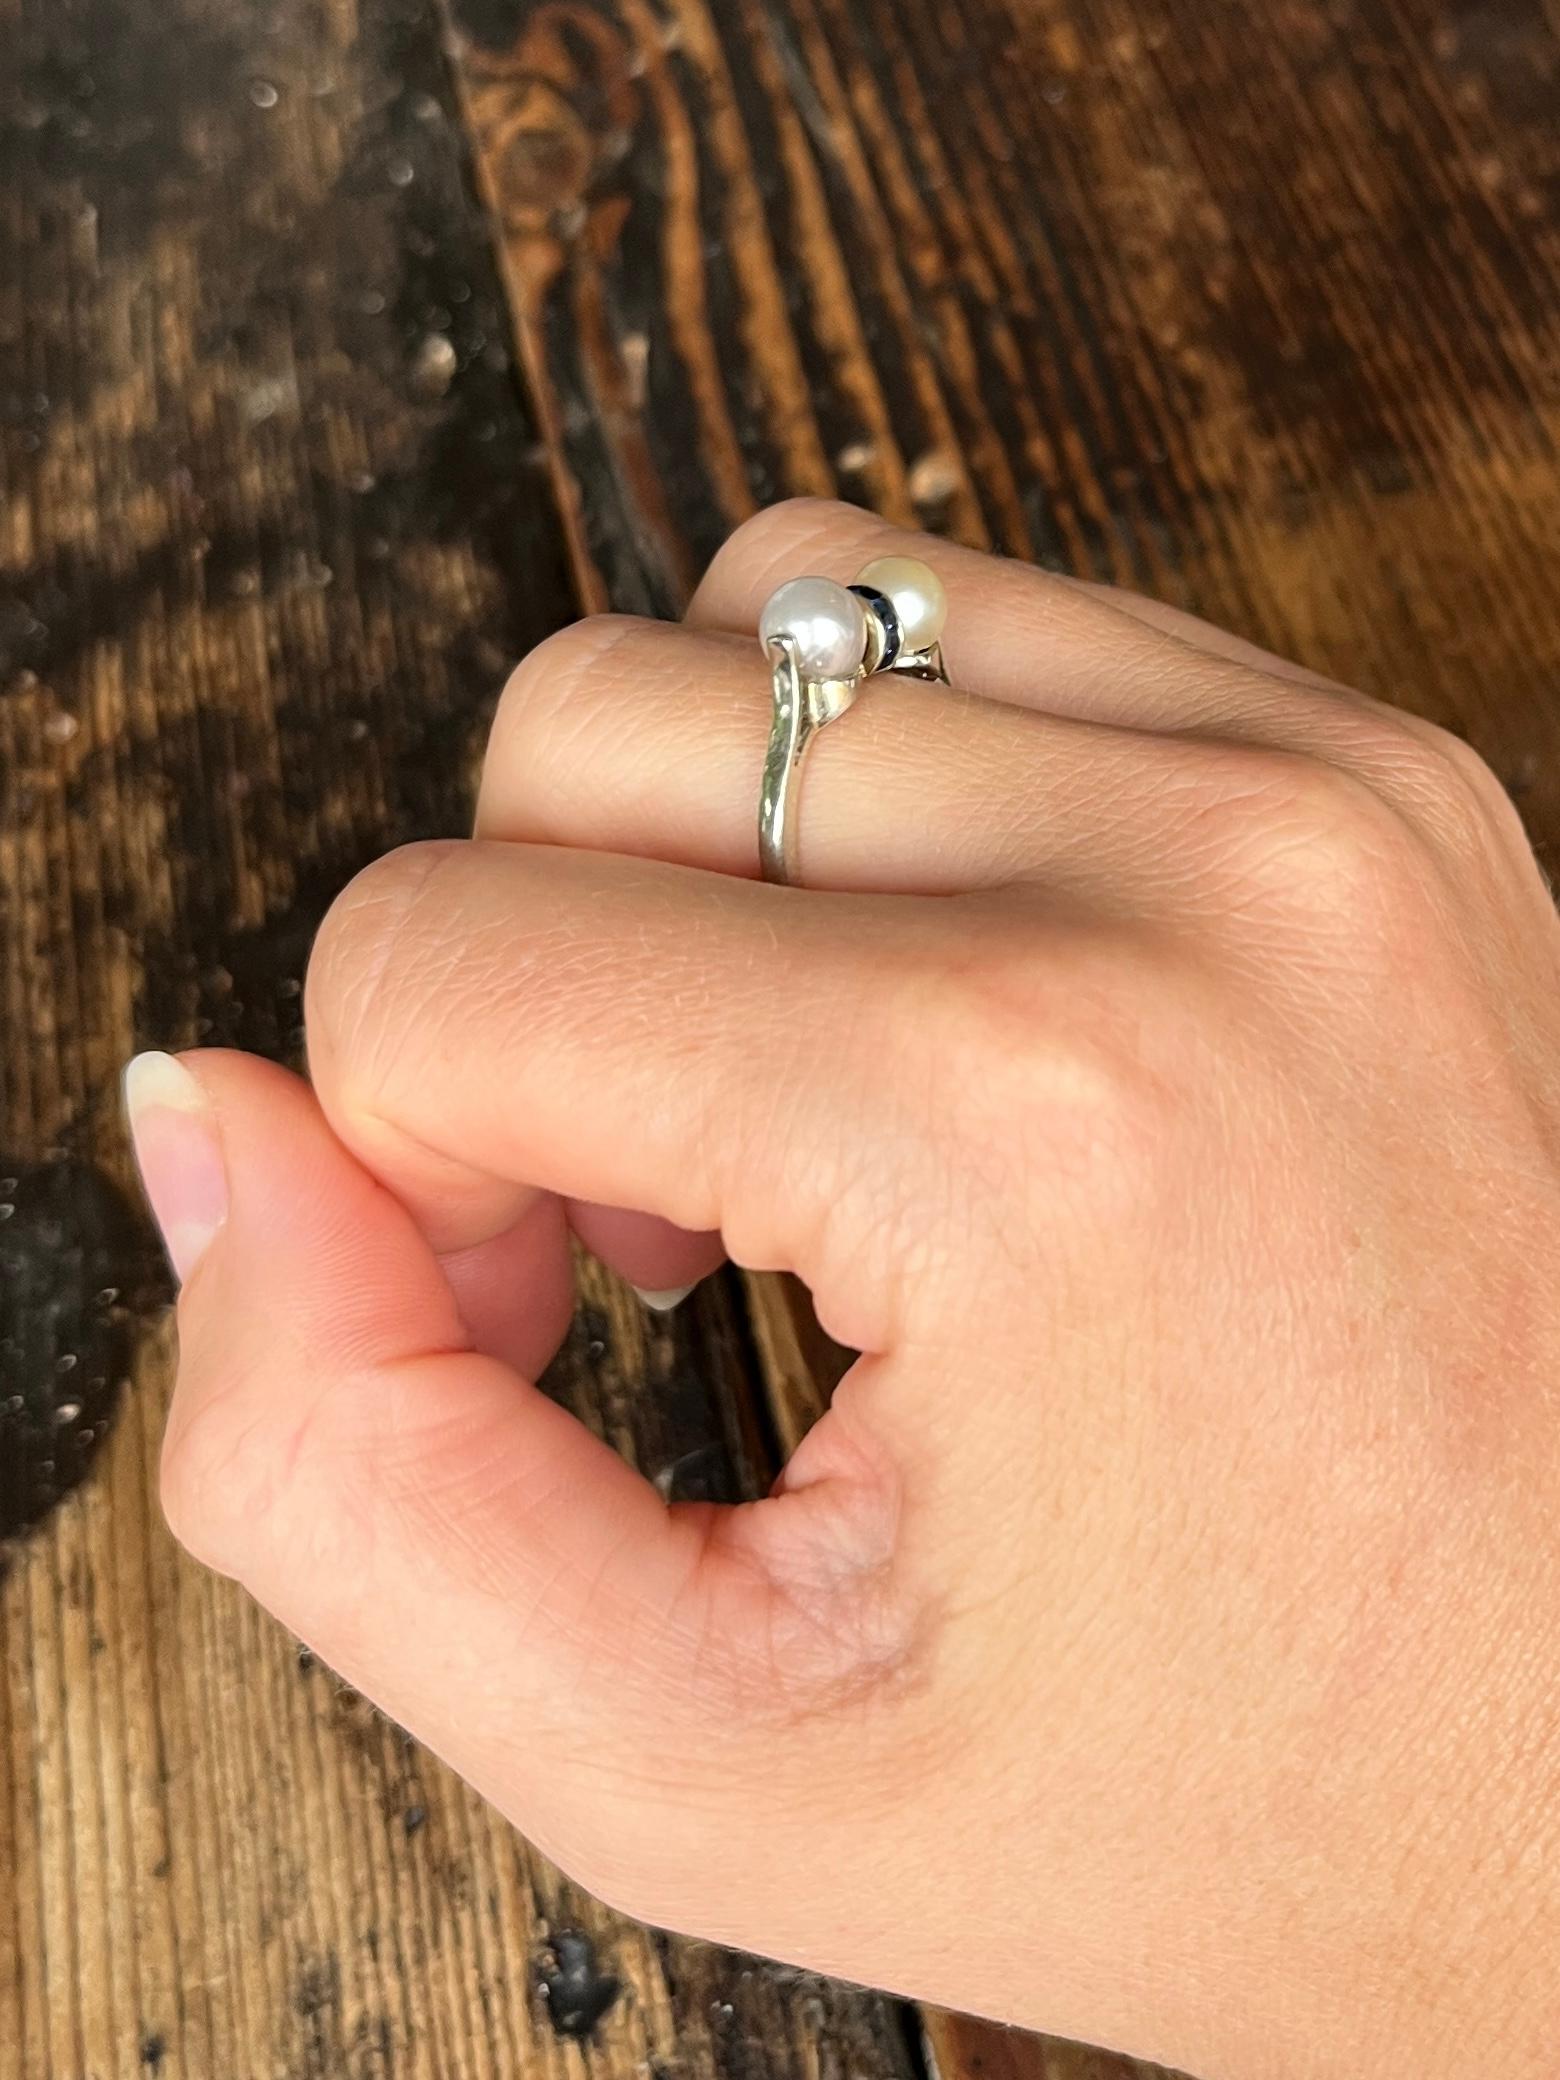 Dieser Ring enthält zwei Perlen, die sich im Farbton leicht unterscheiden, wie Sie auf den Bildern sehen können. Zwischen den Perlen befindet sich ein Band aus quadratisch geschliffenen Saphiren mit insgesamt 40 Pence. Der Ring ist aus 18 Karat